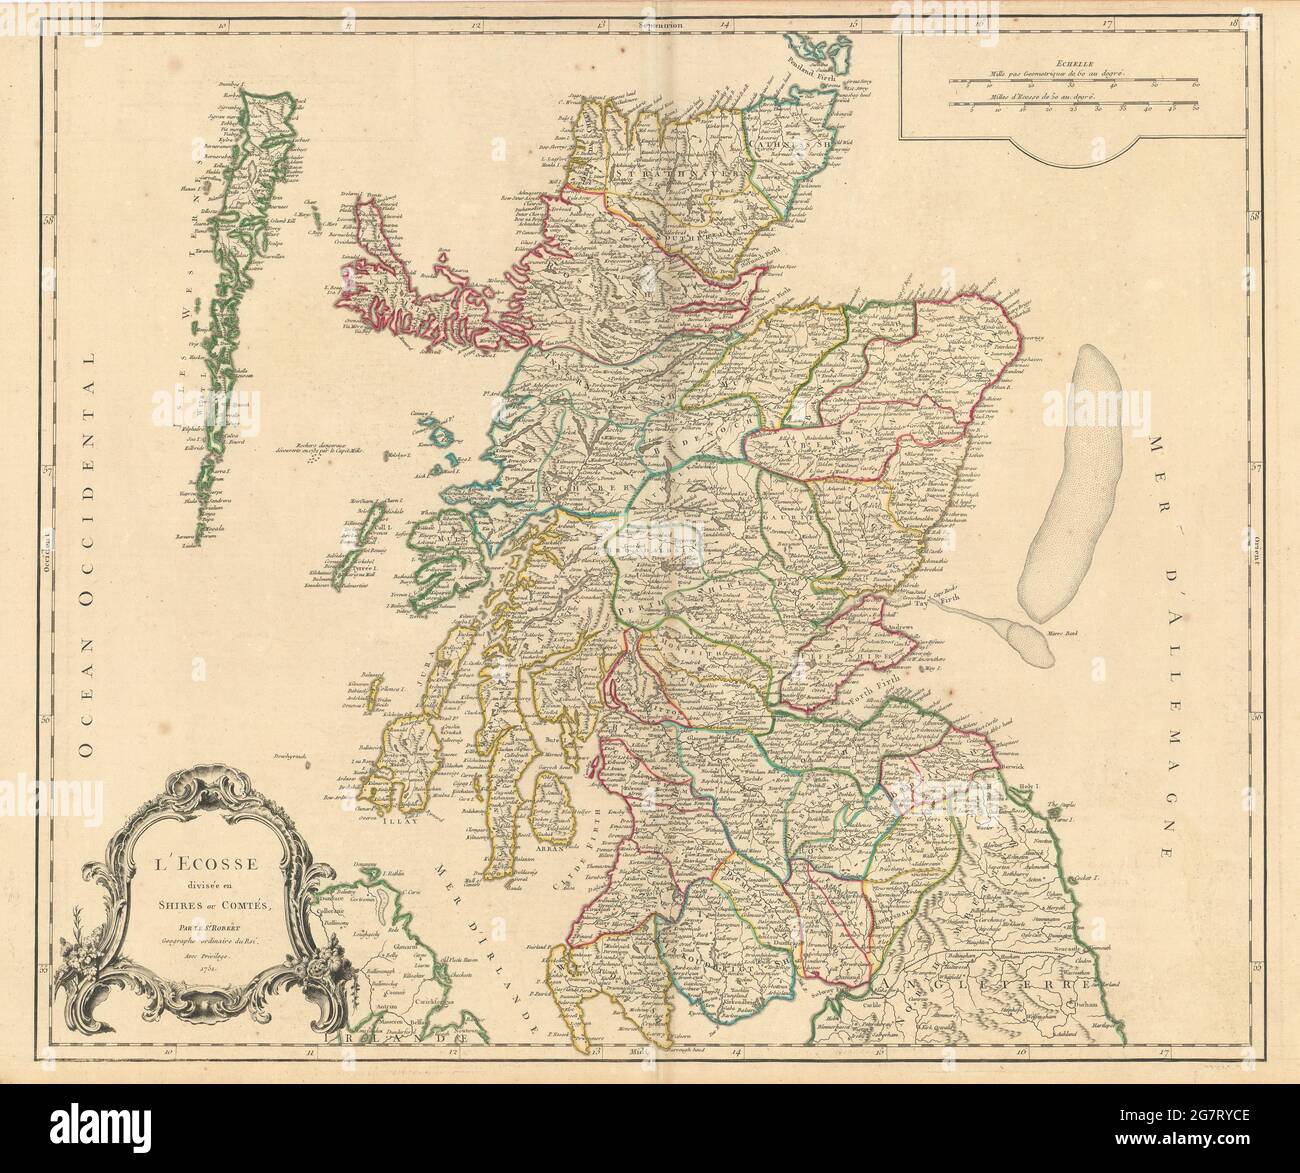 'L'Ecosse divisée en shires ou comtés'. Scotland in counties. VAUGONDY 1752 map Stock Photo